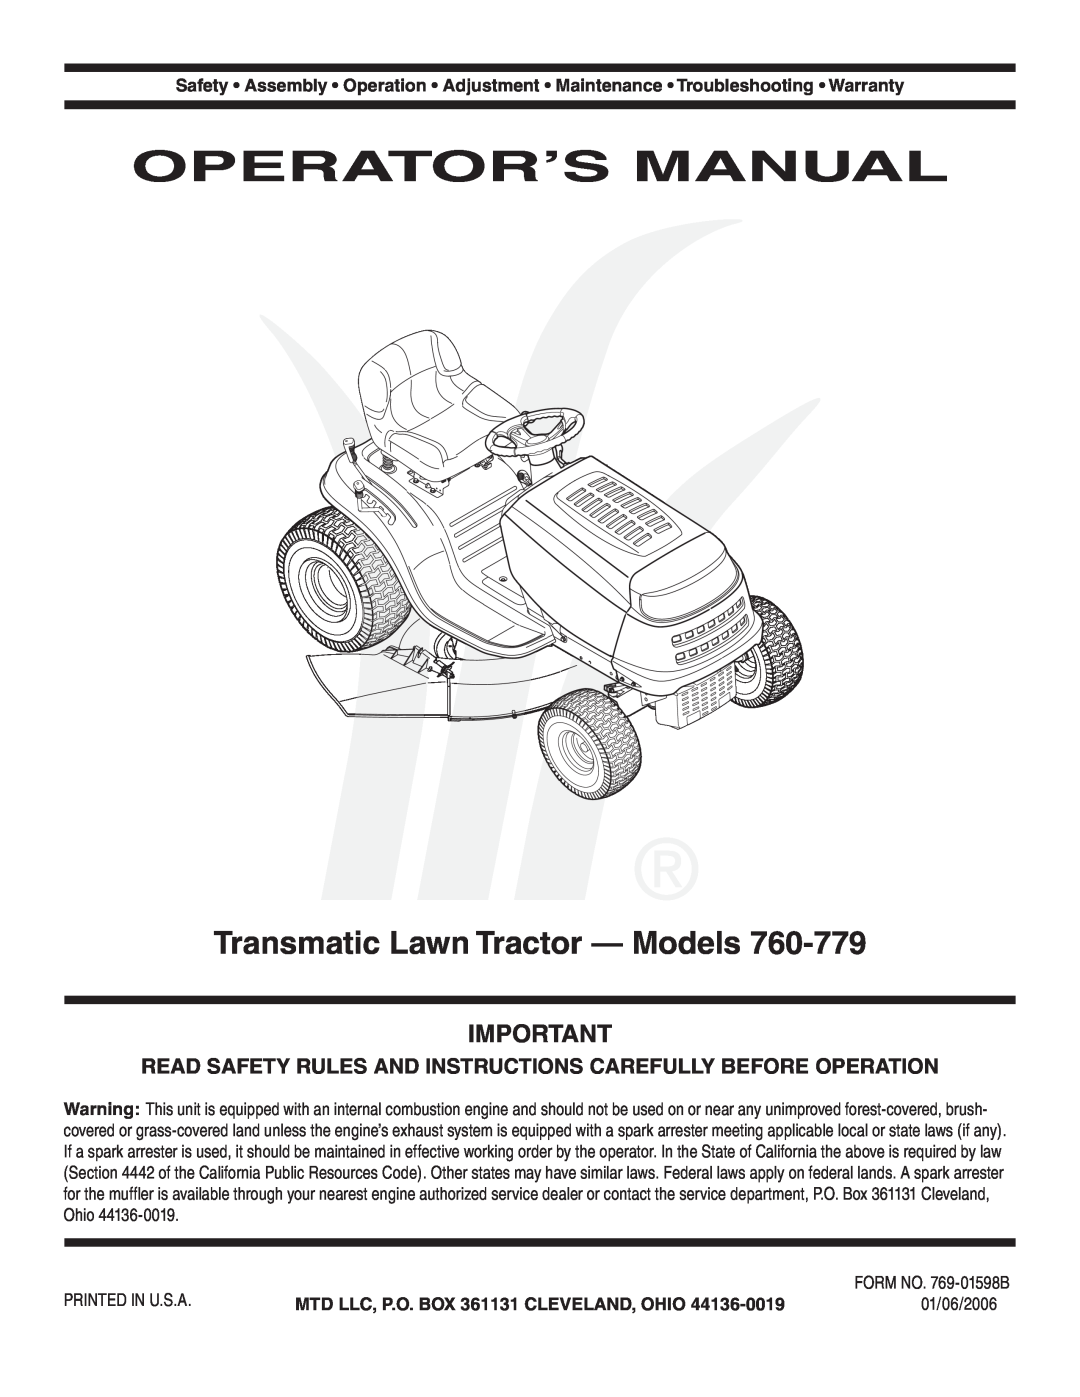 MTD 760, 779, 760-779 warranty Operator’S Manual, Transmatic Lawn Tractor - Models 